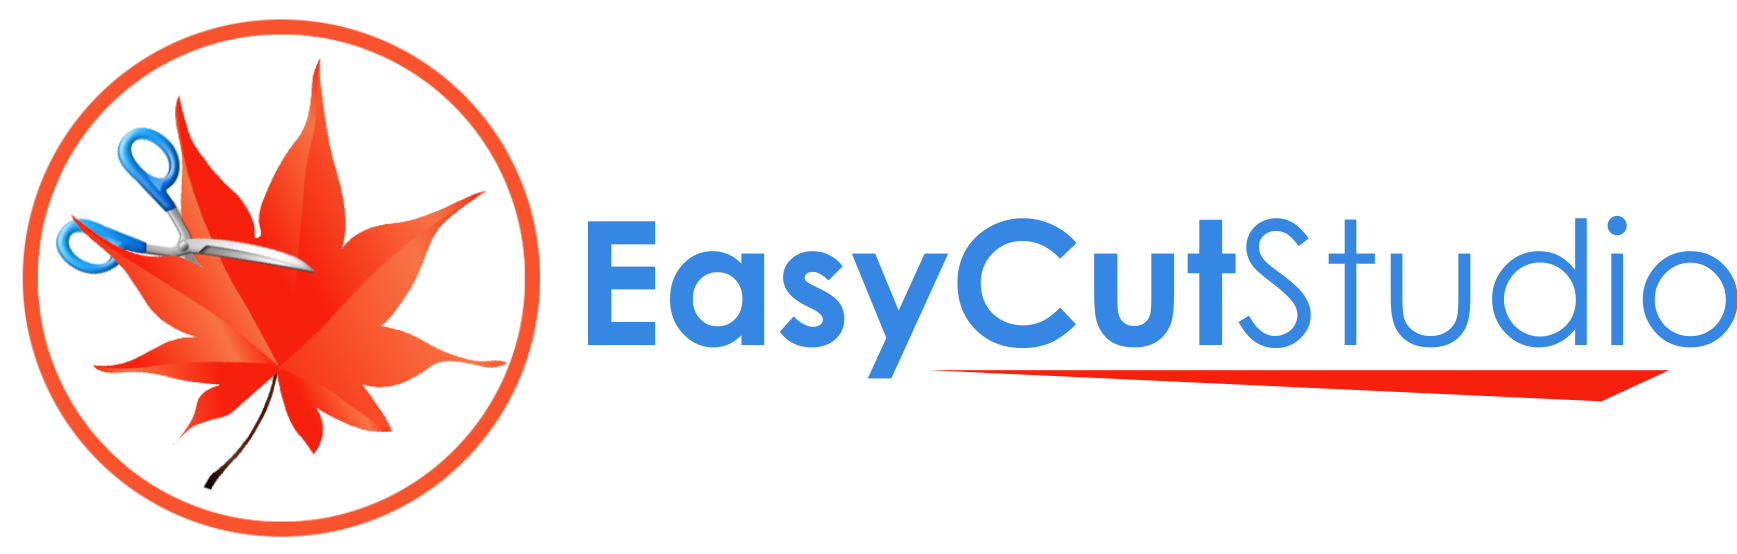 Easy Cut Studio Windows操作系统安装版软件